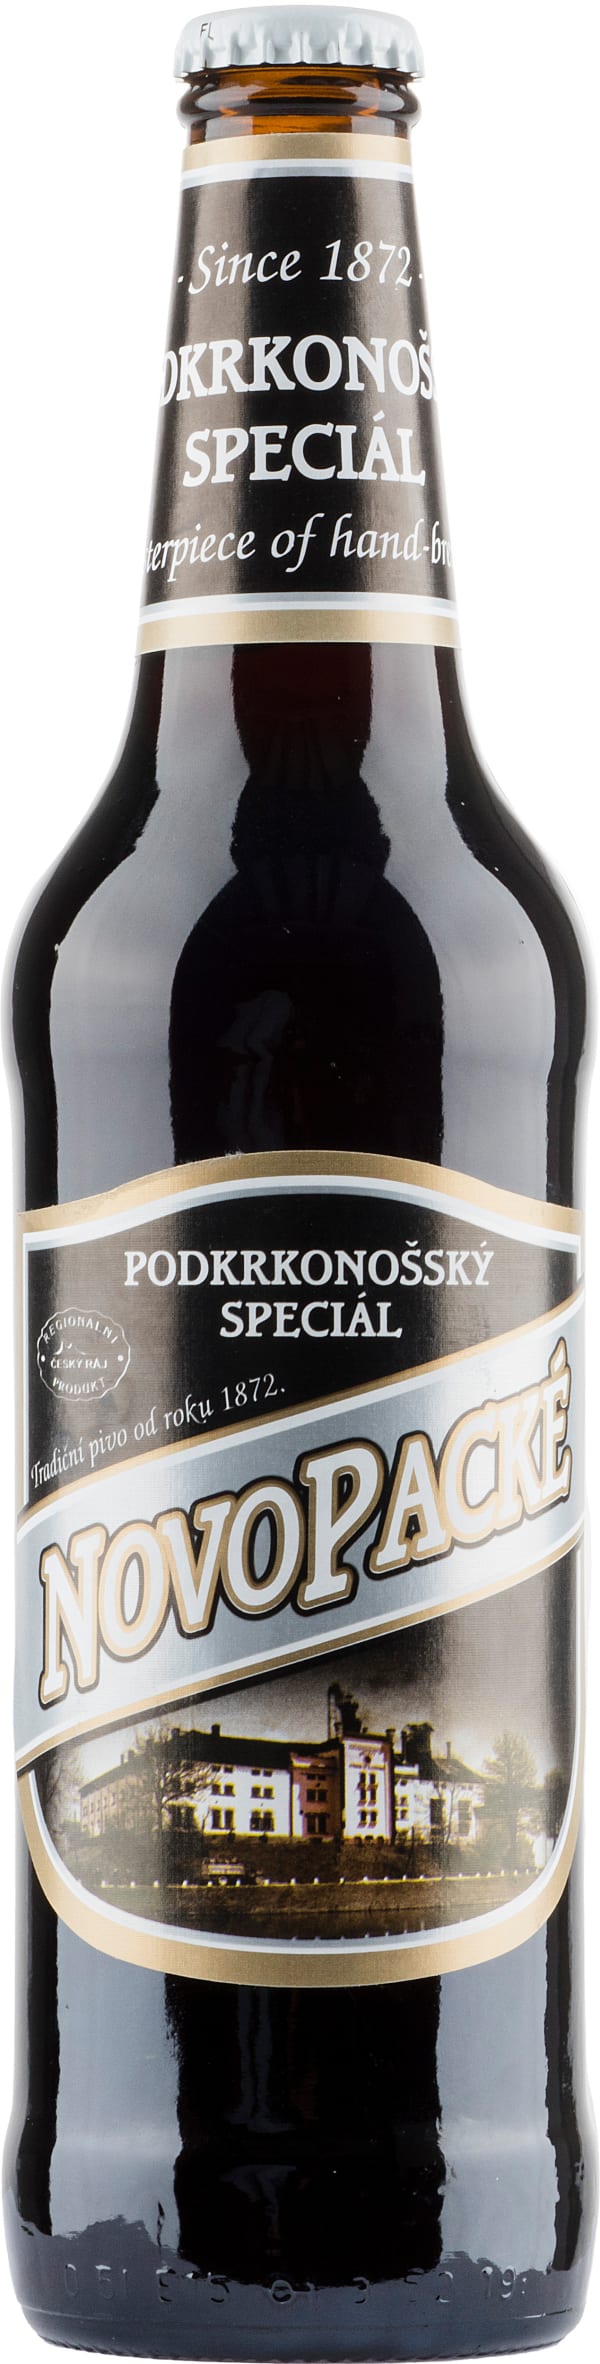 Novopacké Pivo Podkrkonošský Speciál